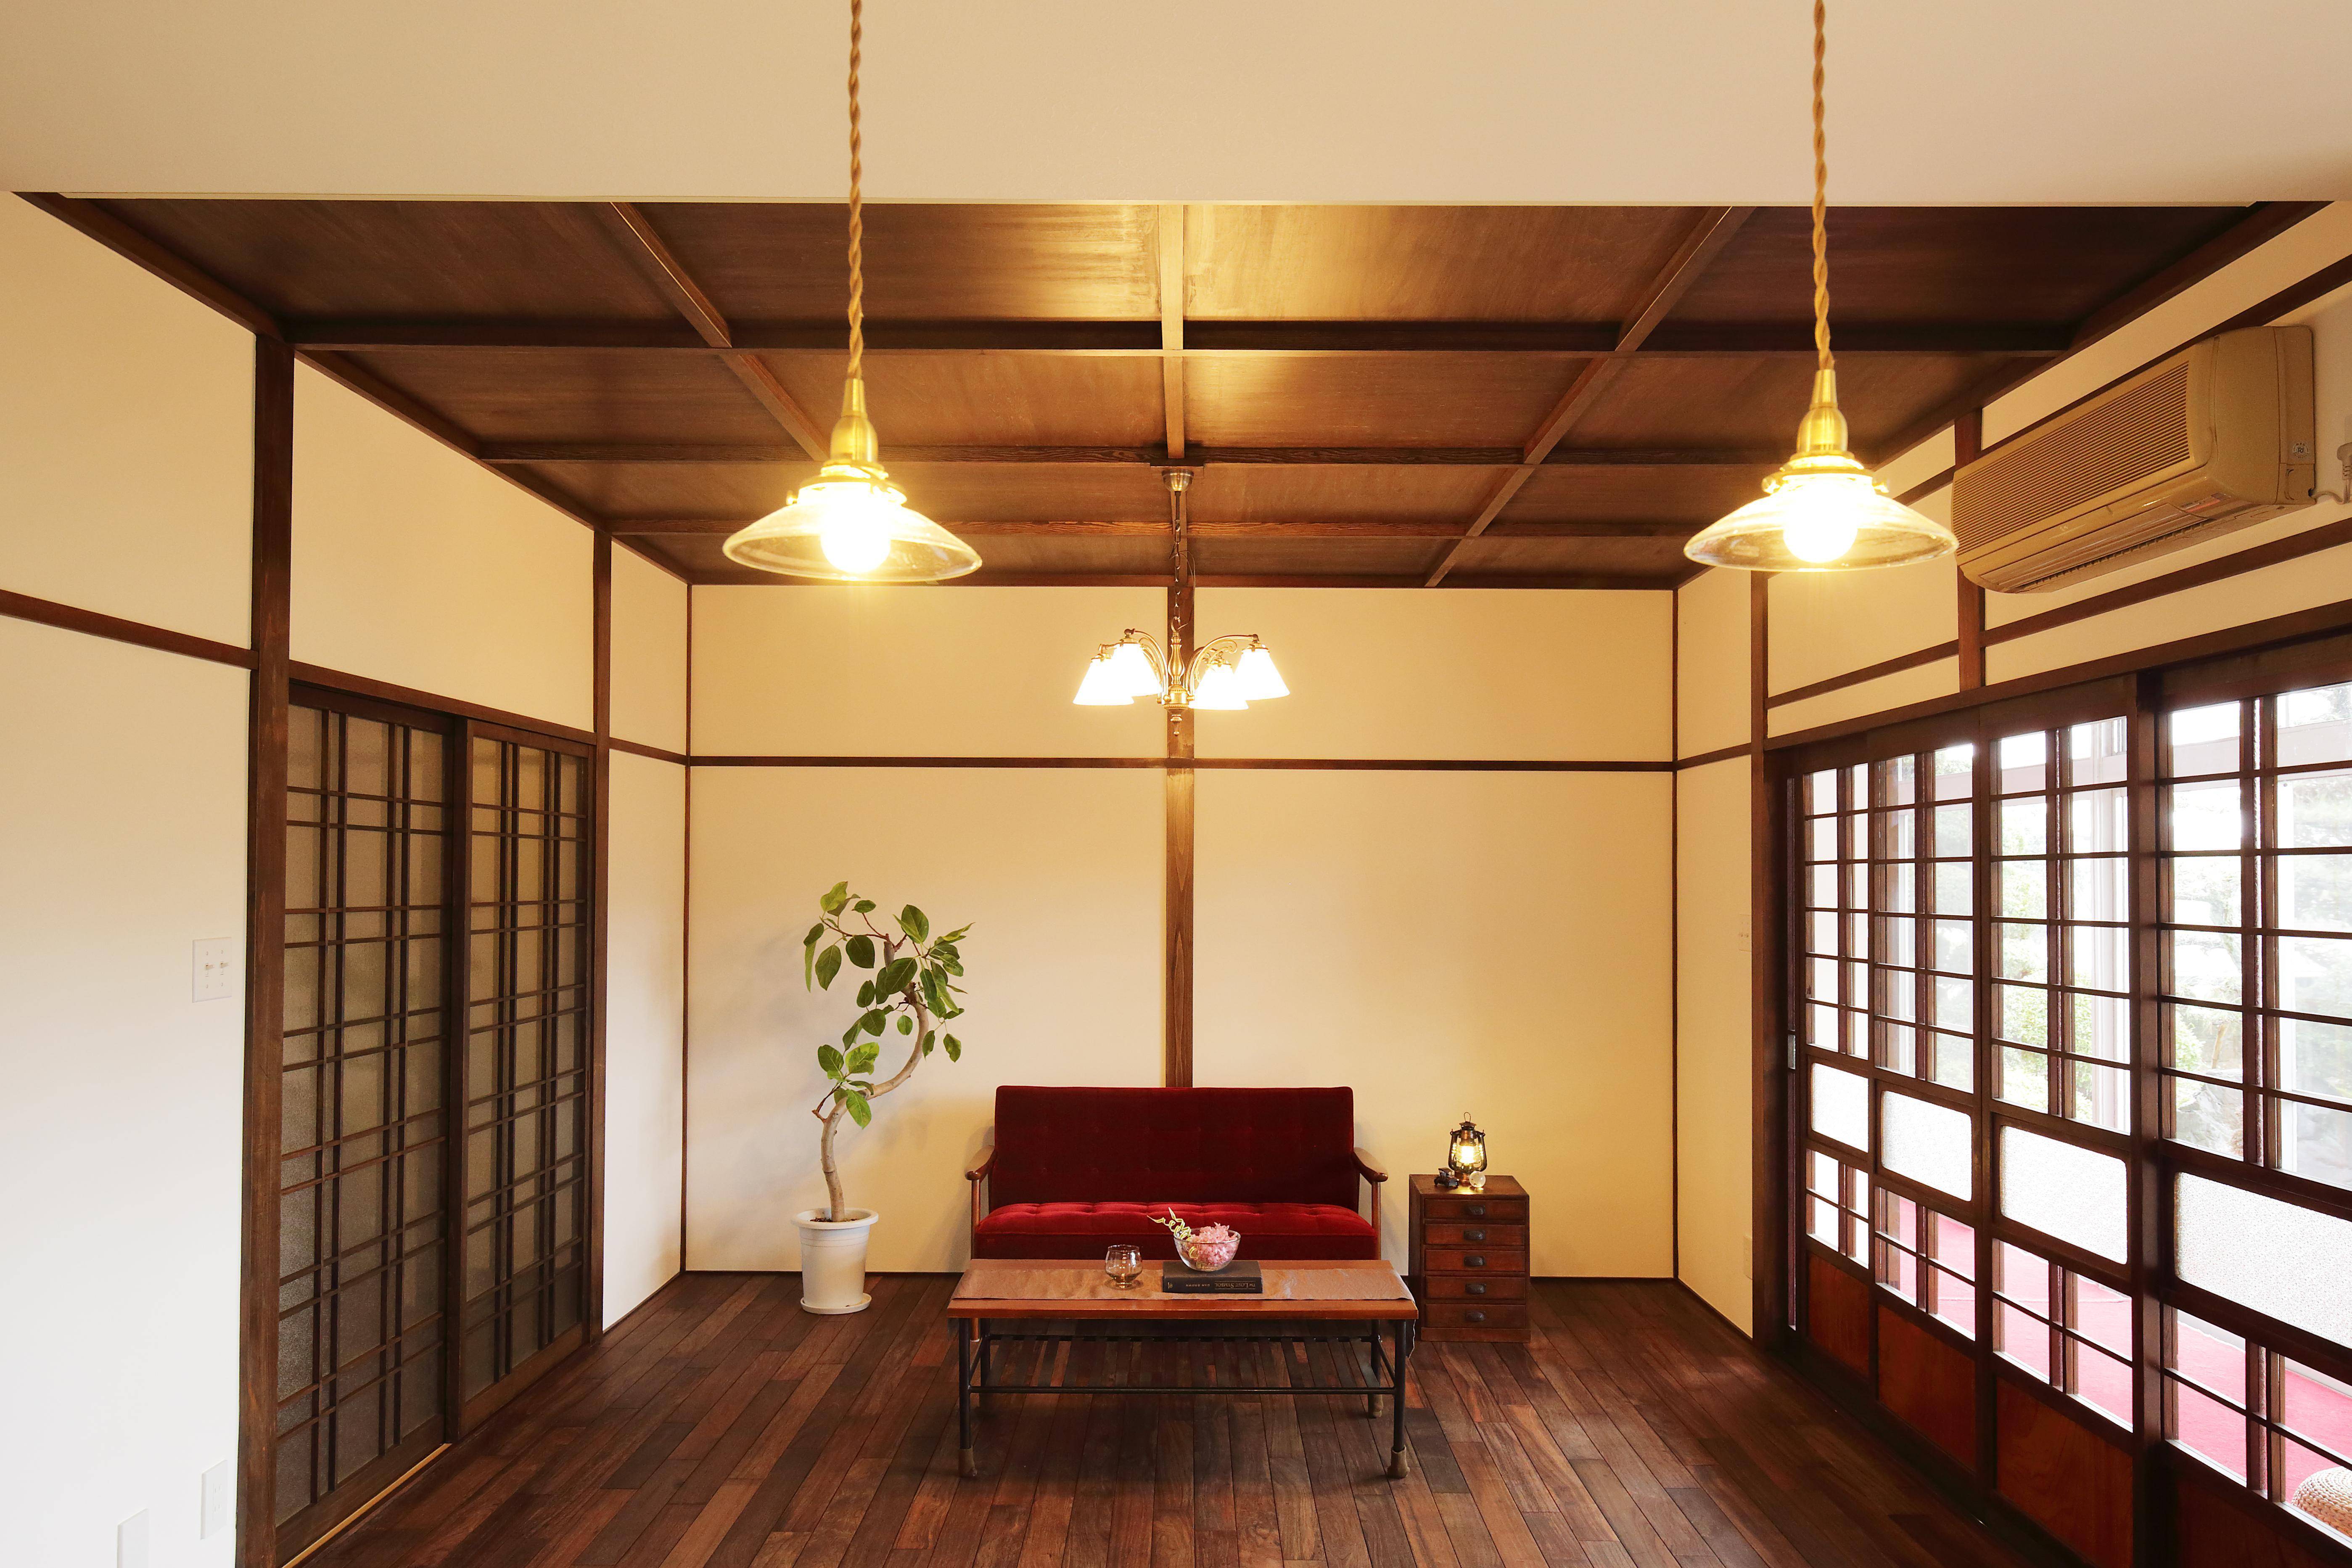 看似简约的日本室内设计其实独具匠心